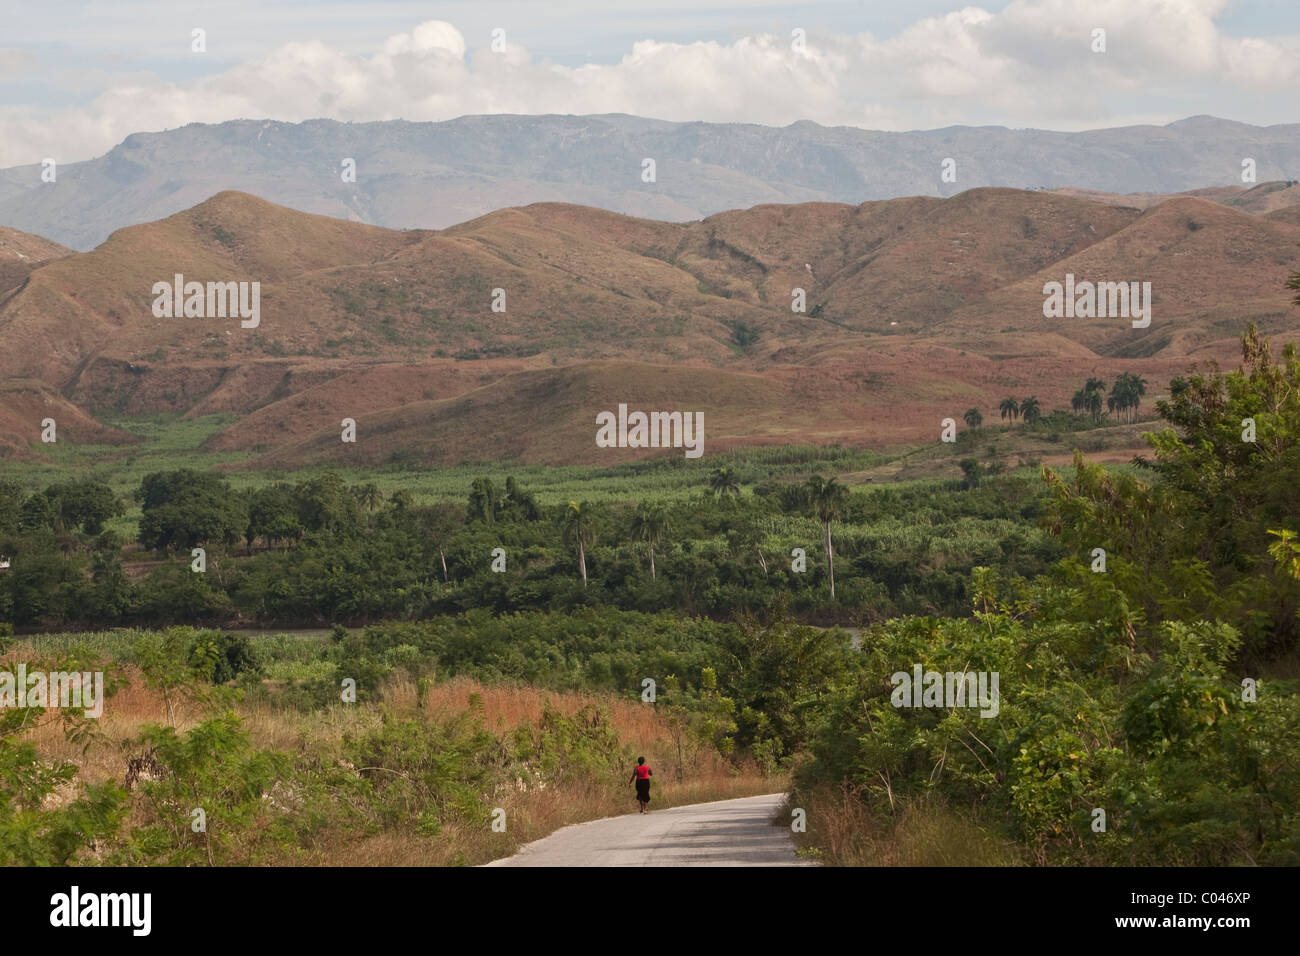 Paysage en Haïti dans la vallée de l'Artibonite, montrant des montagnes déboisées. Banque D'Images